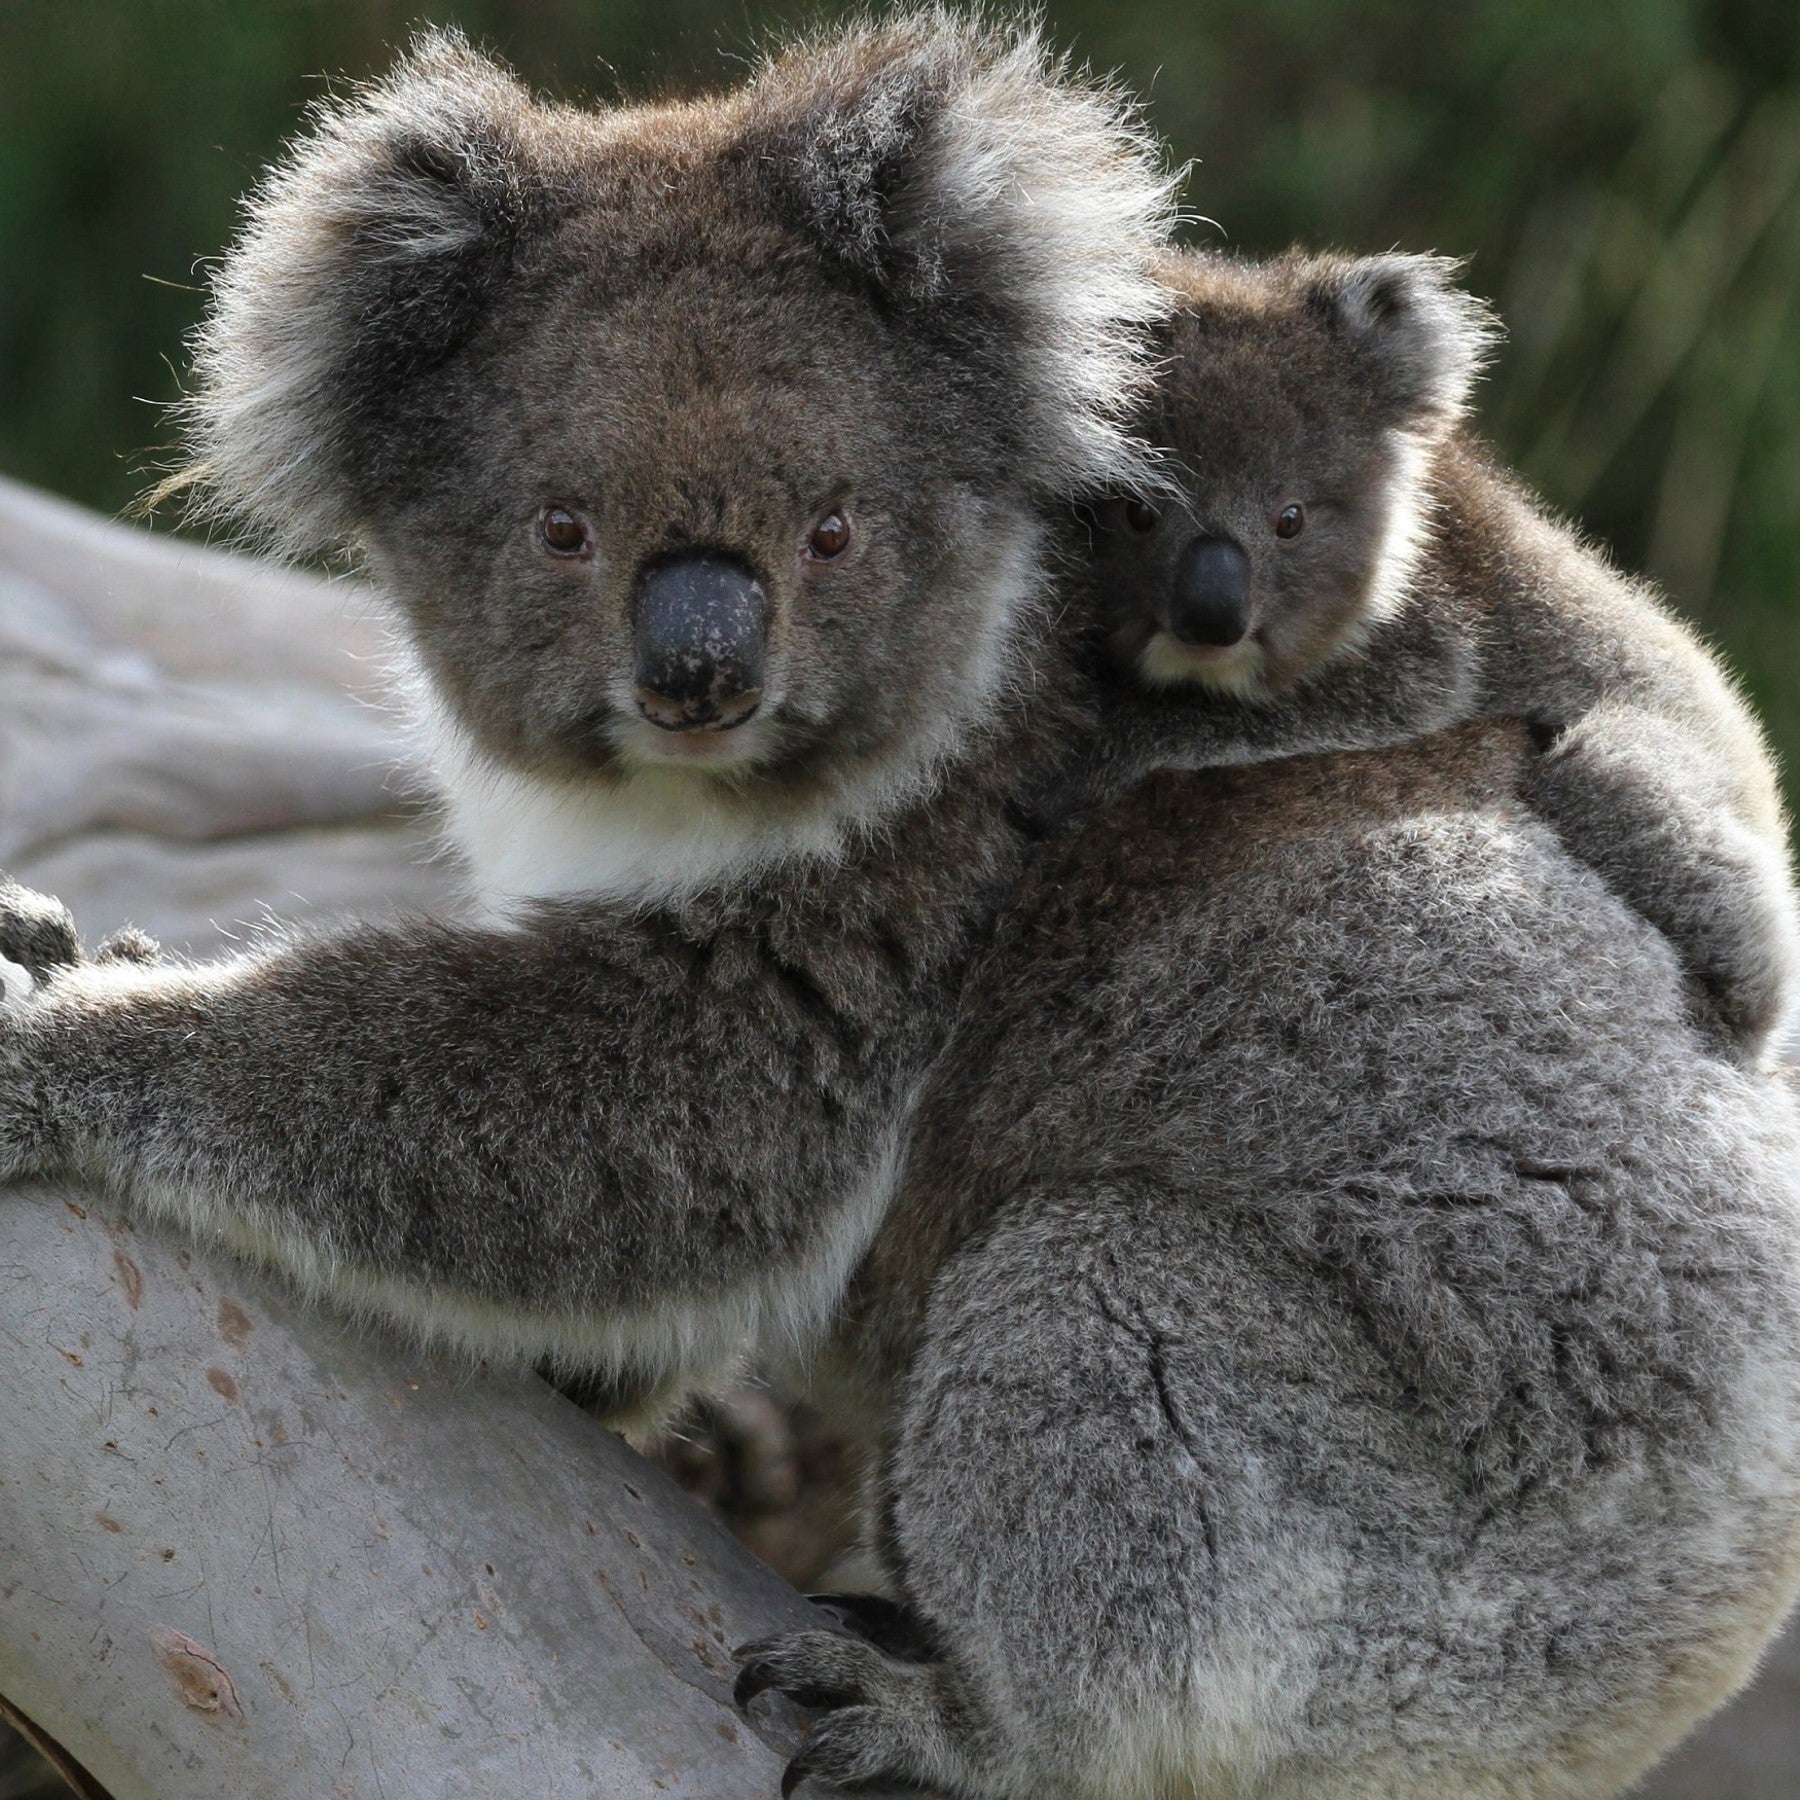 Koala family - WWF-Canada